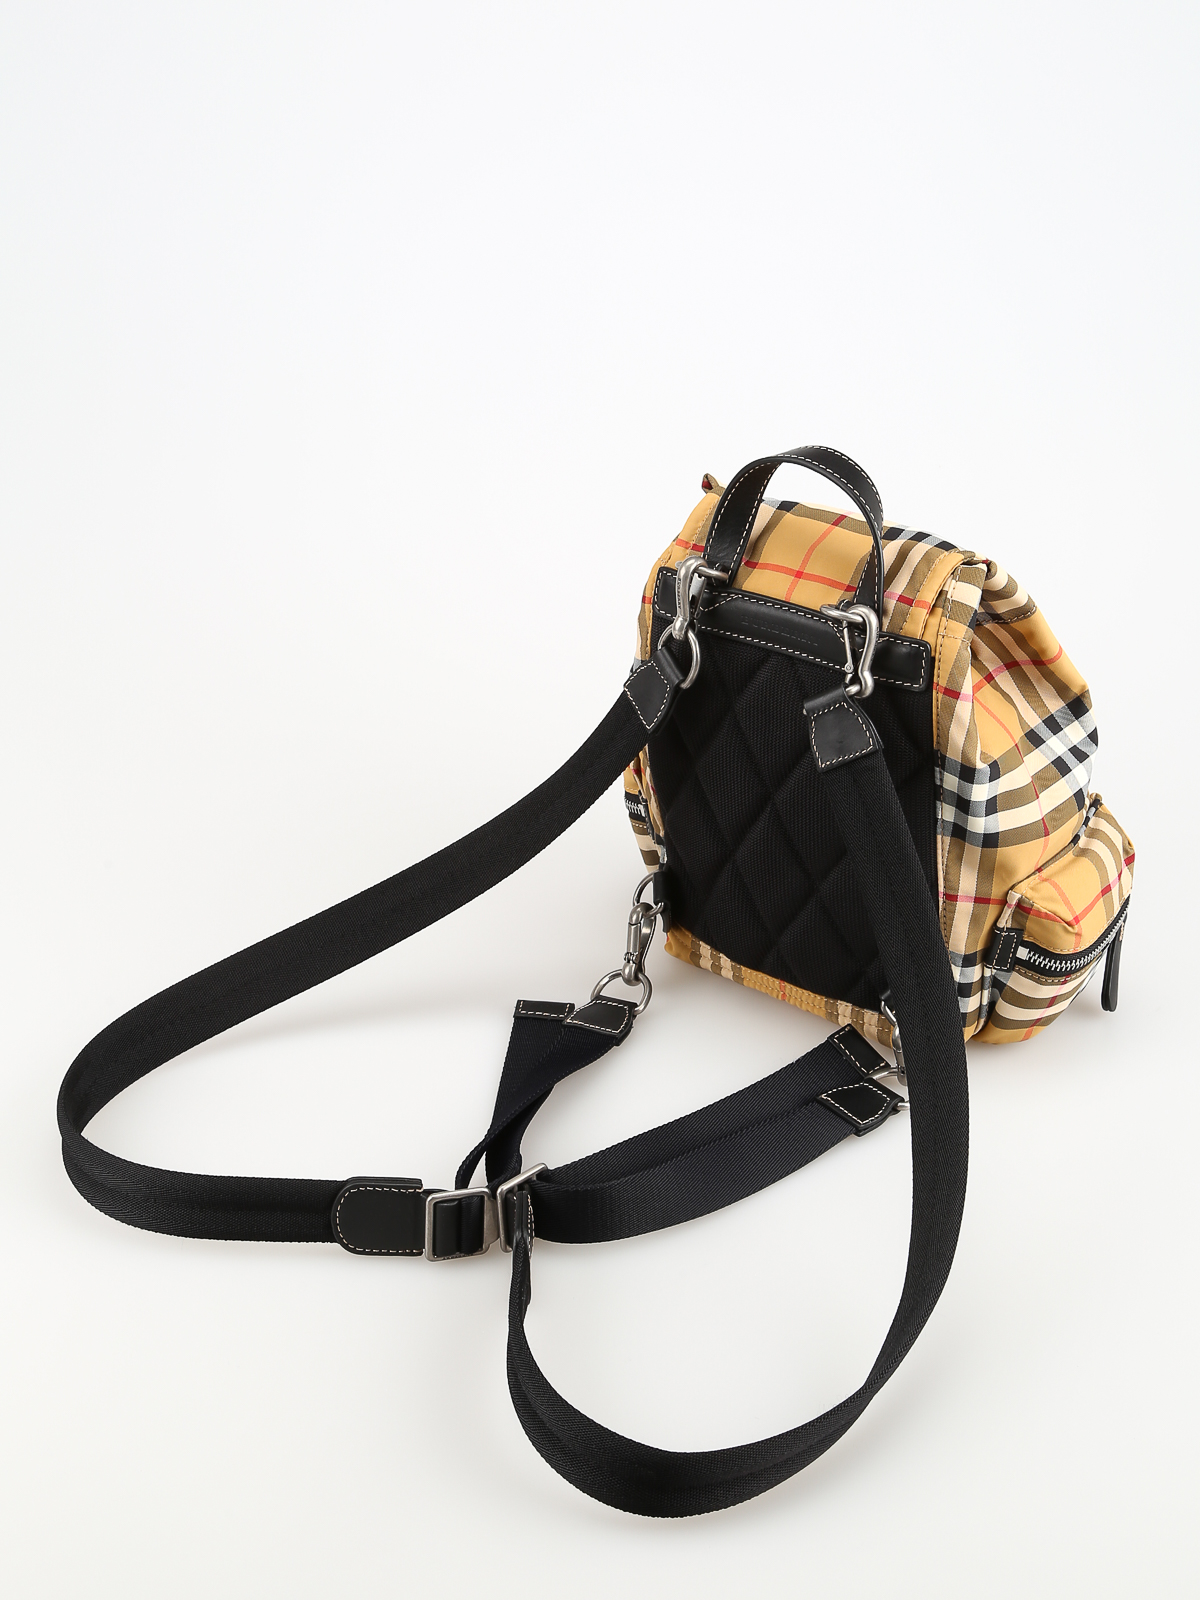 Backpacks Burberry - The Rucksack S Vintage Check nylon backpack - 8006725